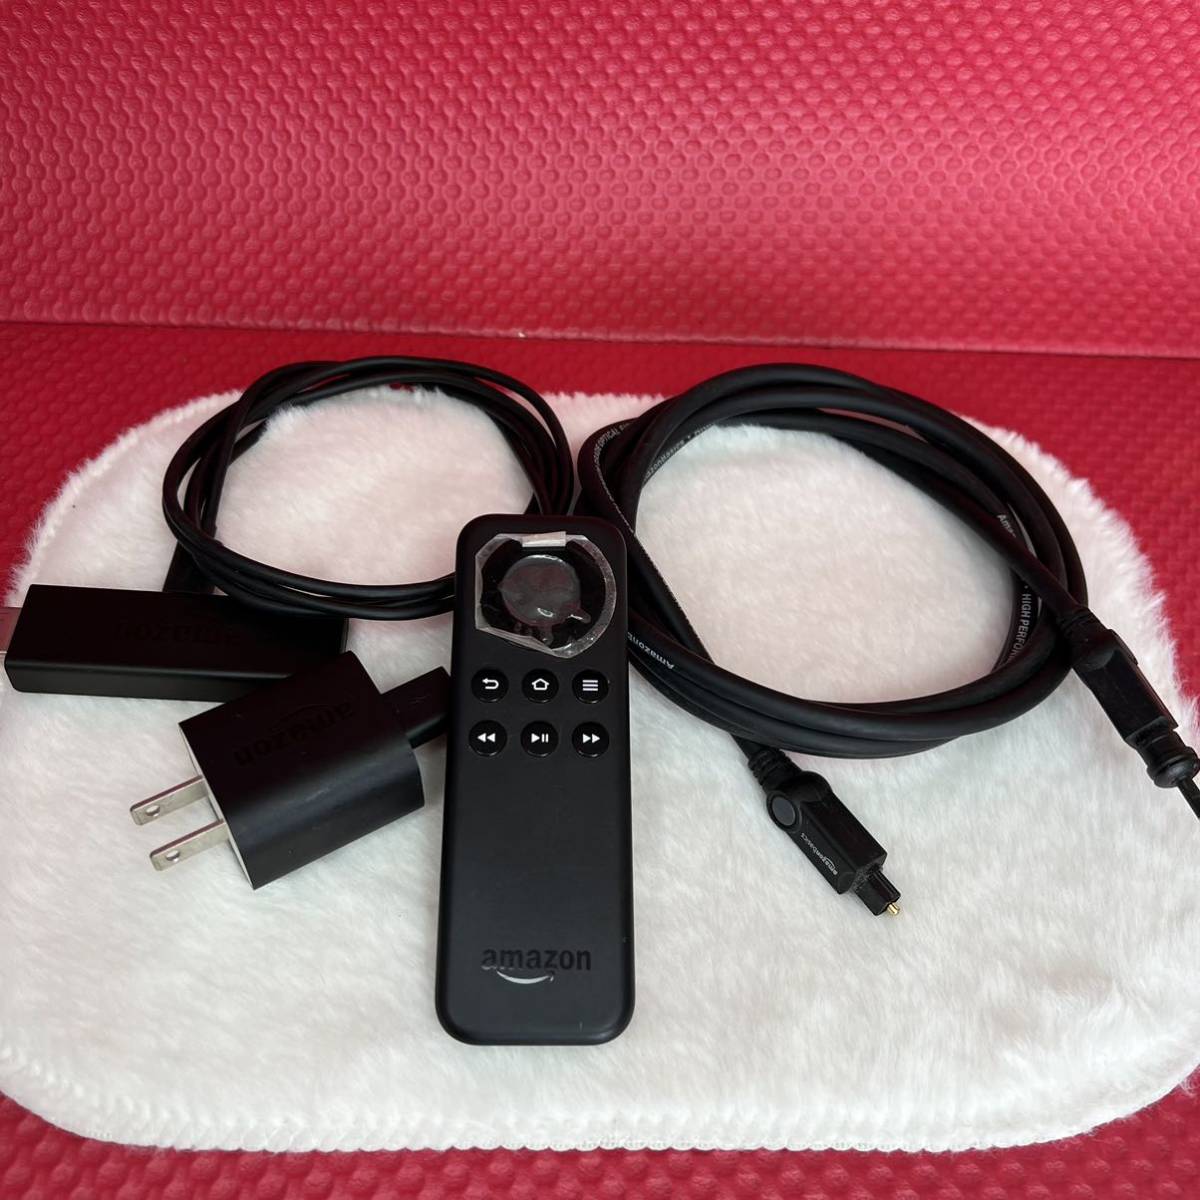 Amazon W87CUN Fire TV Stick アマゾン ファイアTVスティック HDMI ケーブル/アダプター/リモコン_画像1